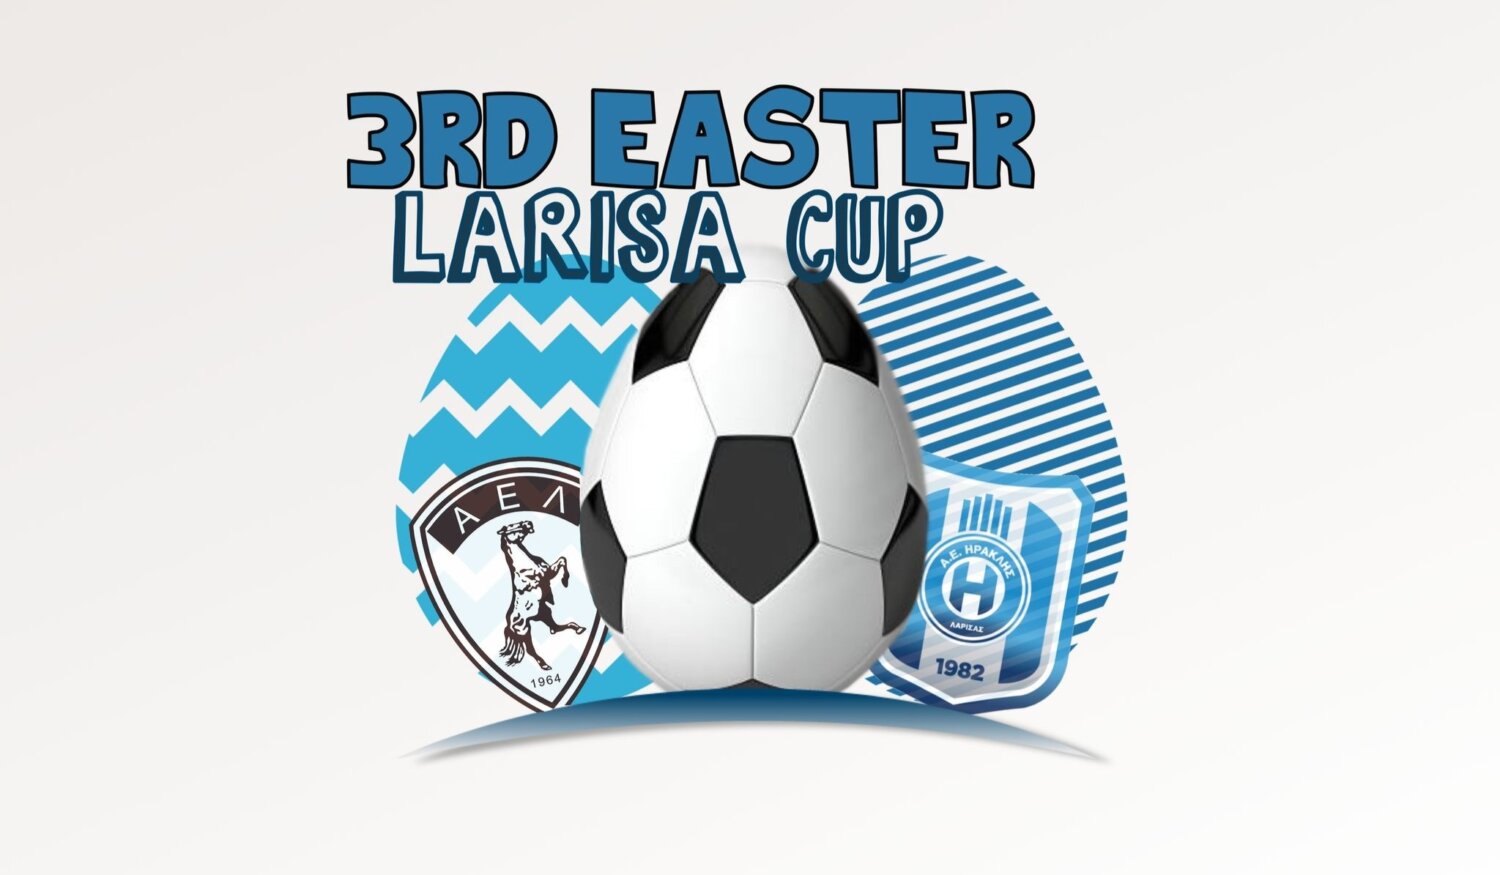 Τη Μ. Εβδομάδα το 3rd Easter Larisa Cup για τα 60 χρόνια της ΑΕΛ